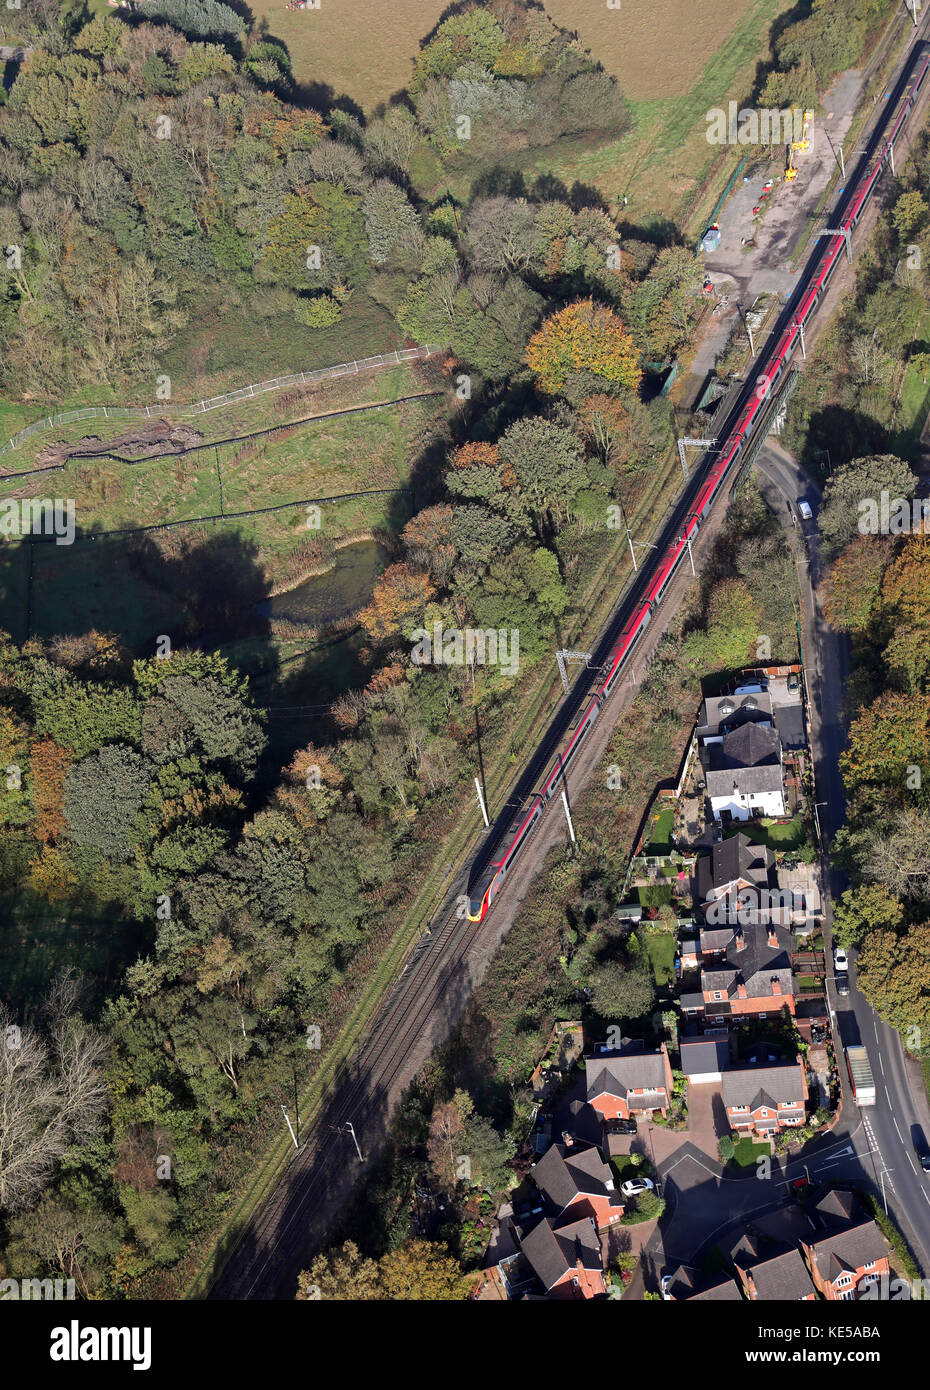 Vista aérea de una Virgin Trains tren InterCity en la línea de la Costa Oeste, Inglaterra, Reino Unido. Foto de stock